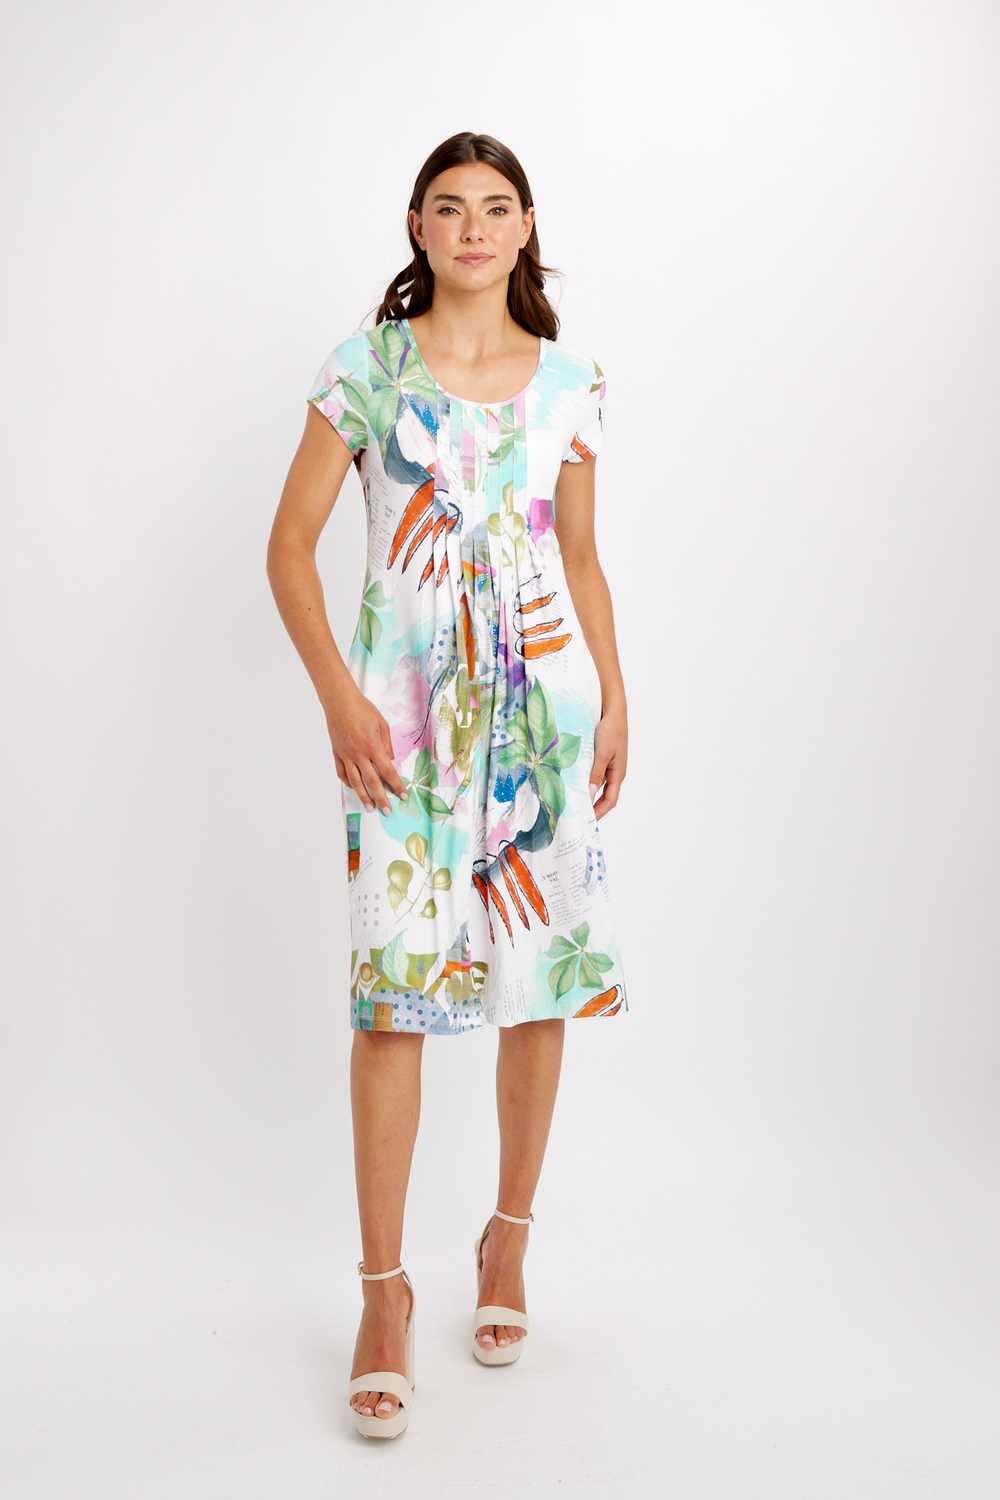 Pleated Summer Midi Dress Style 24604. As Sample